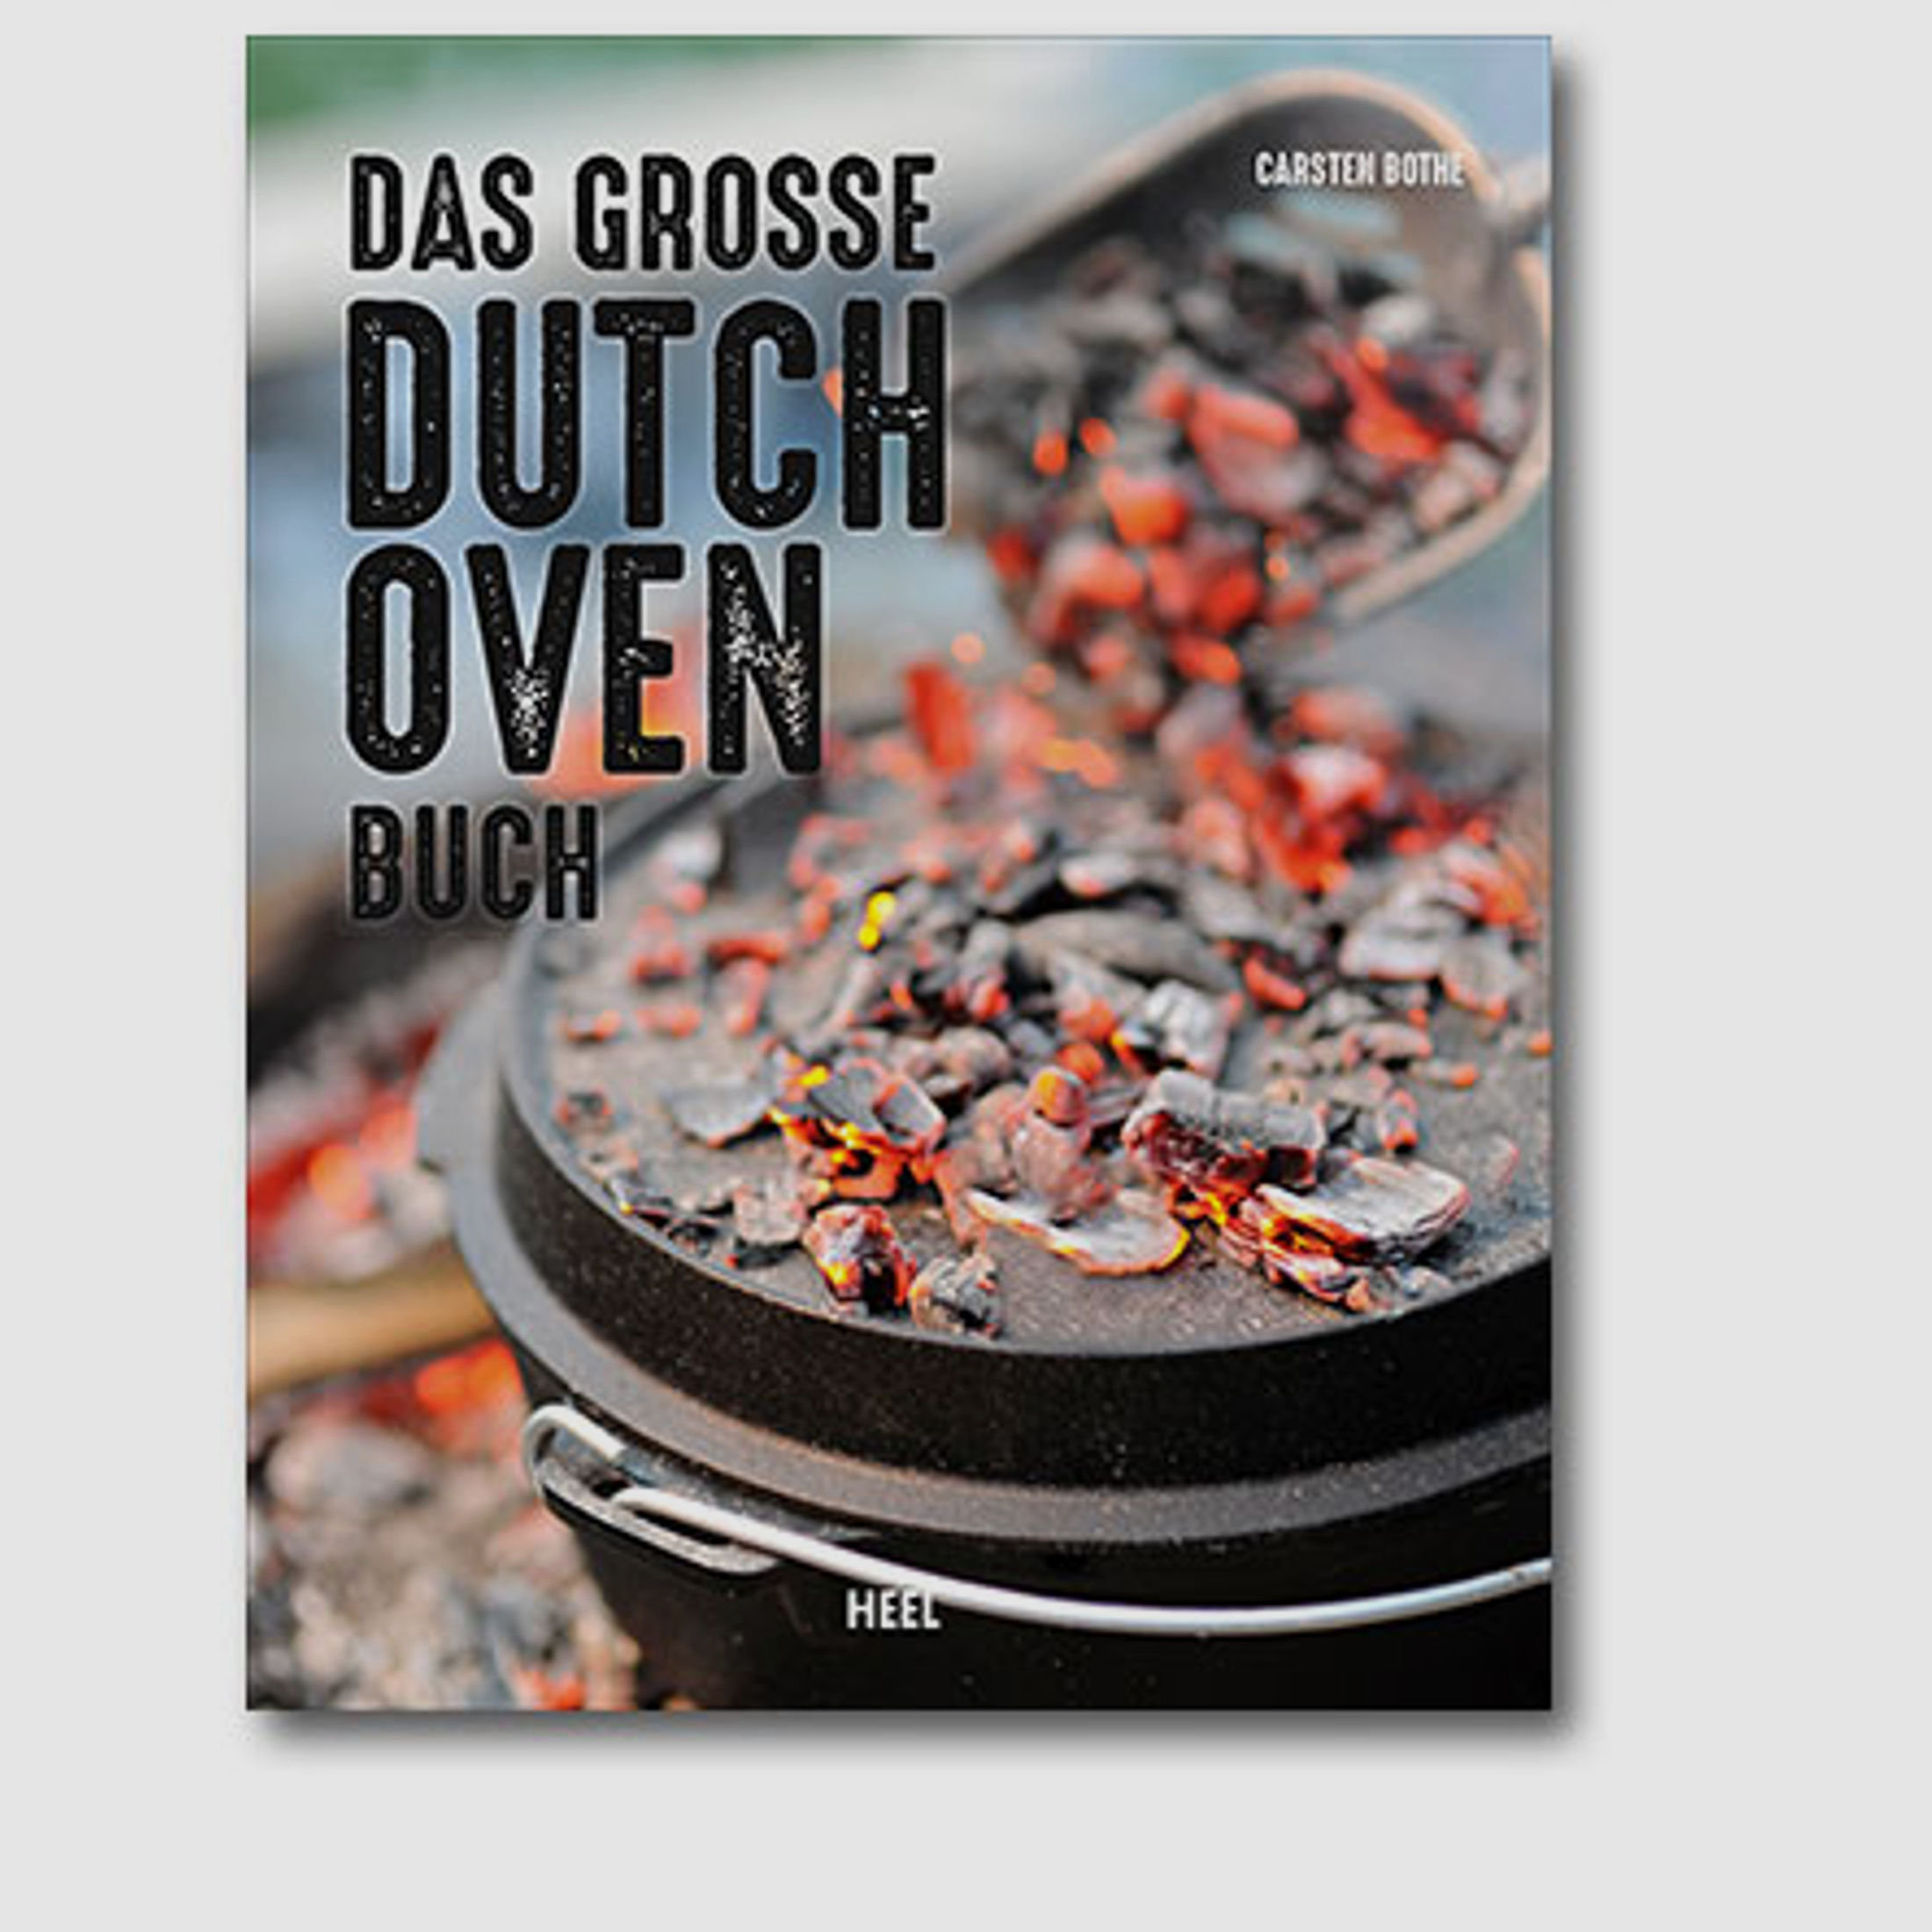 Bothe - Das große Dutch Oven Buch